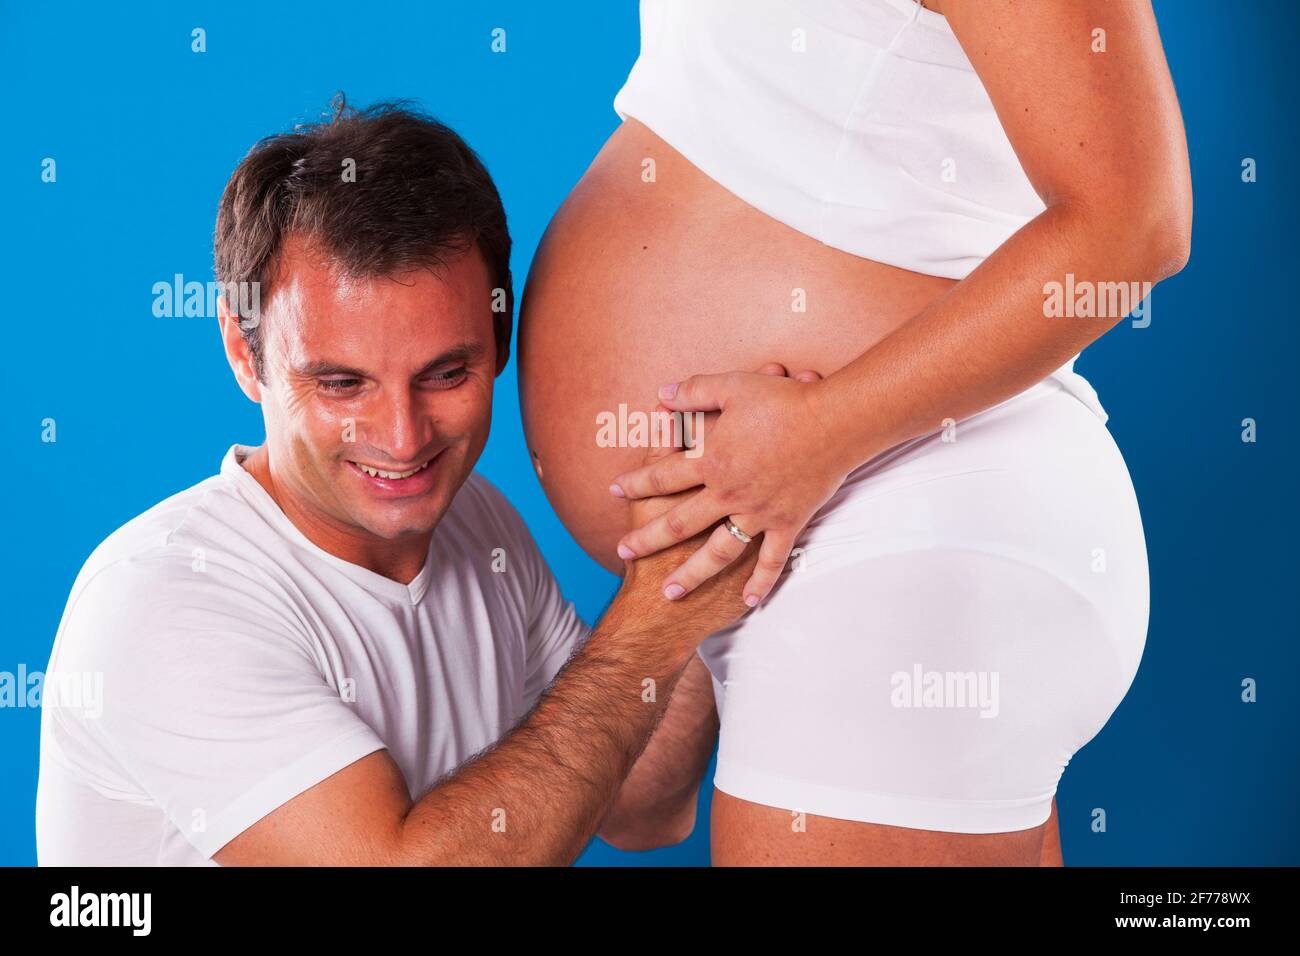 Ehemann genießt seinen schwanger Frau Bauch Stockfoto